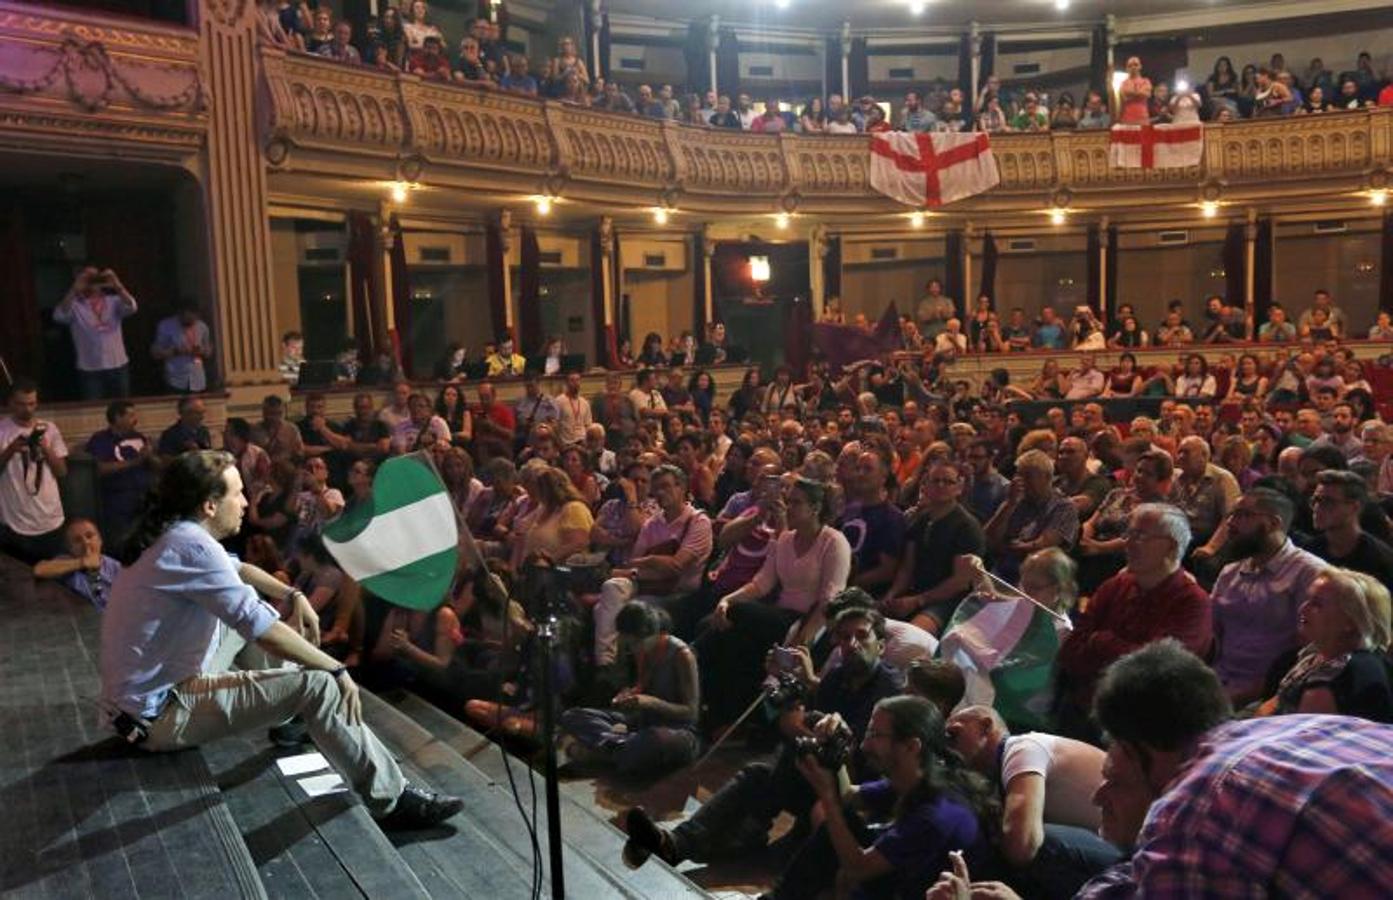 El candidato a la presidencia del Gobierno de Unidos Podemos, Pablo Iglesias, se dirige a los centenares de personas que se agolpan frente al teatro Cervantes de Almeria para asistir a un acto electoral cuyo aforo se ha visto desbordado.